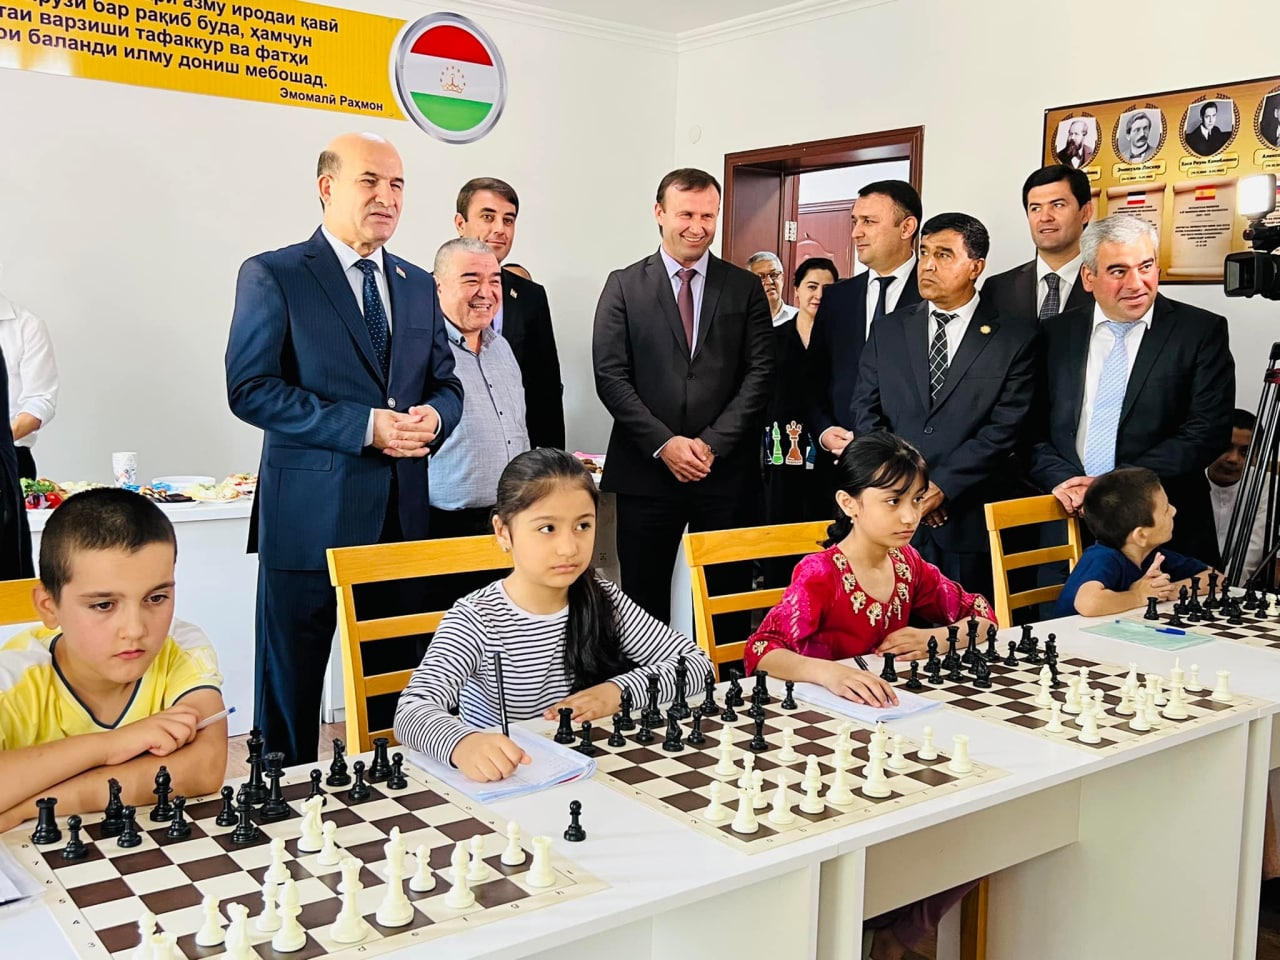 В Душанбе открылся Шахматный центр